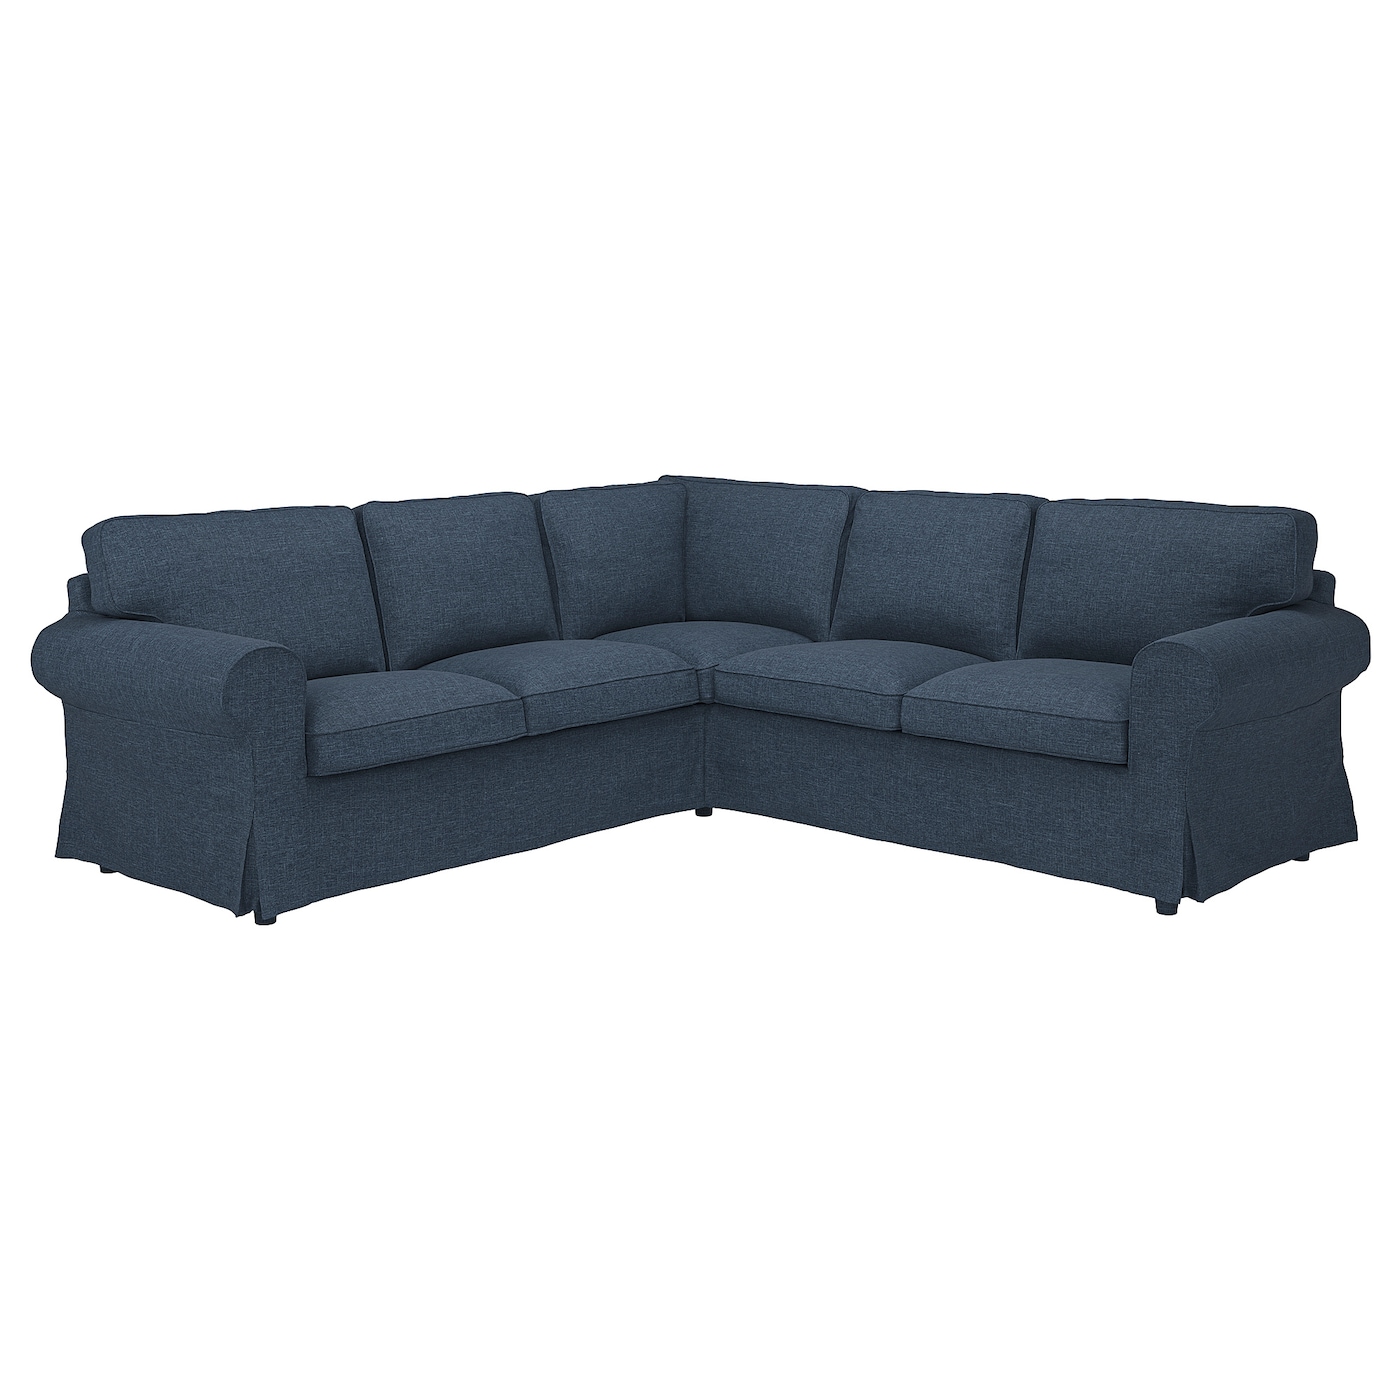 4-местный угловой диван - IKEA EKTORP, 88x243см, синий, ЭКТОРП ИКЕА